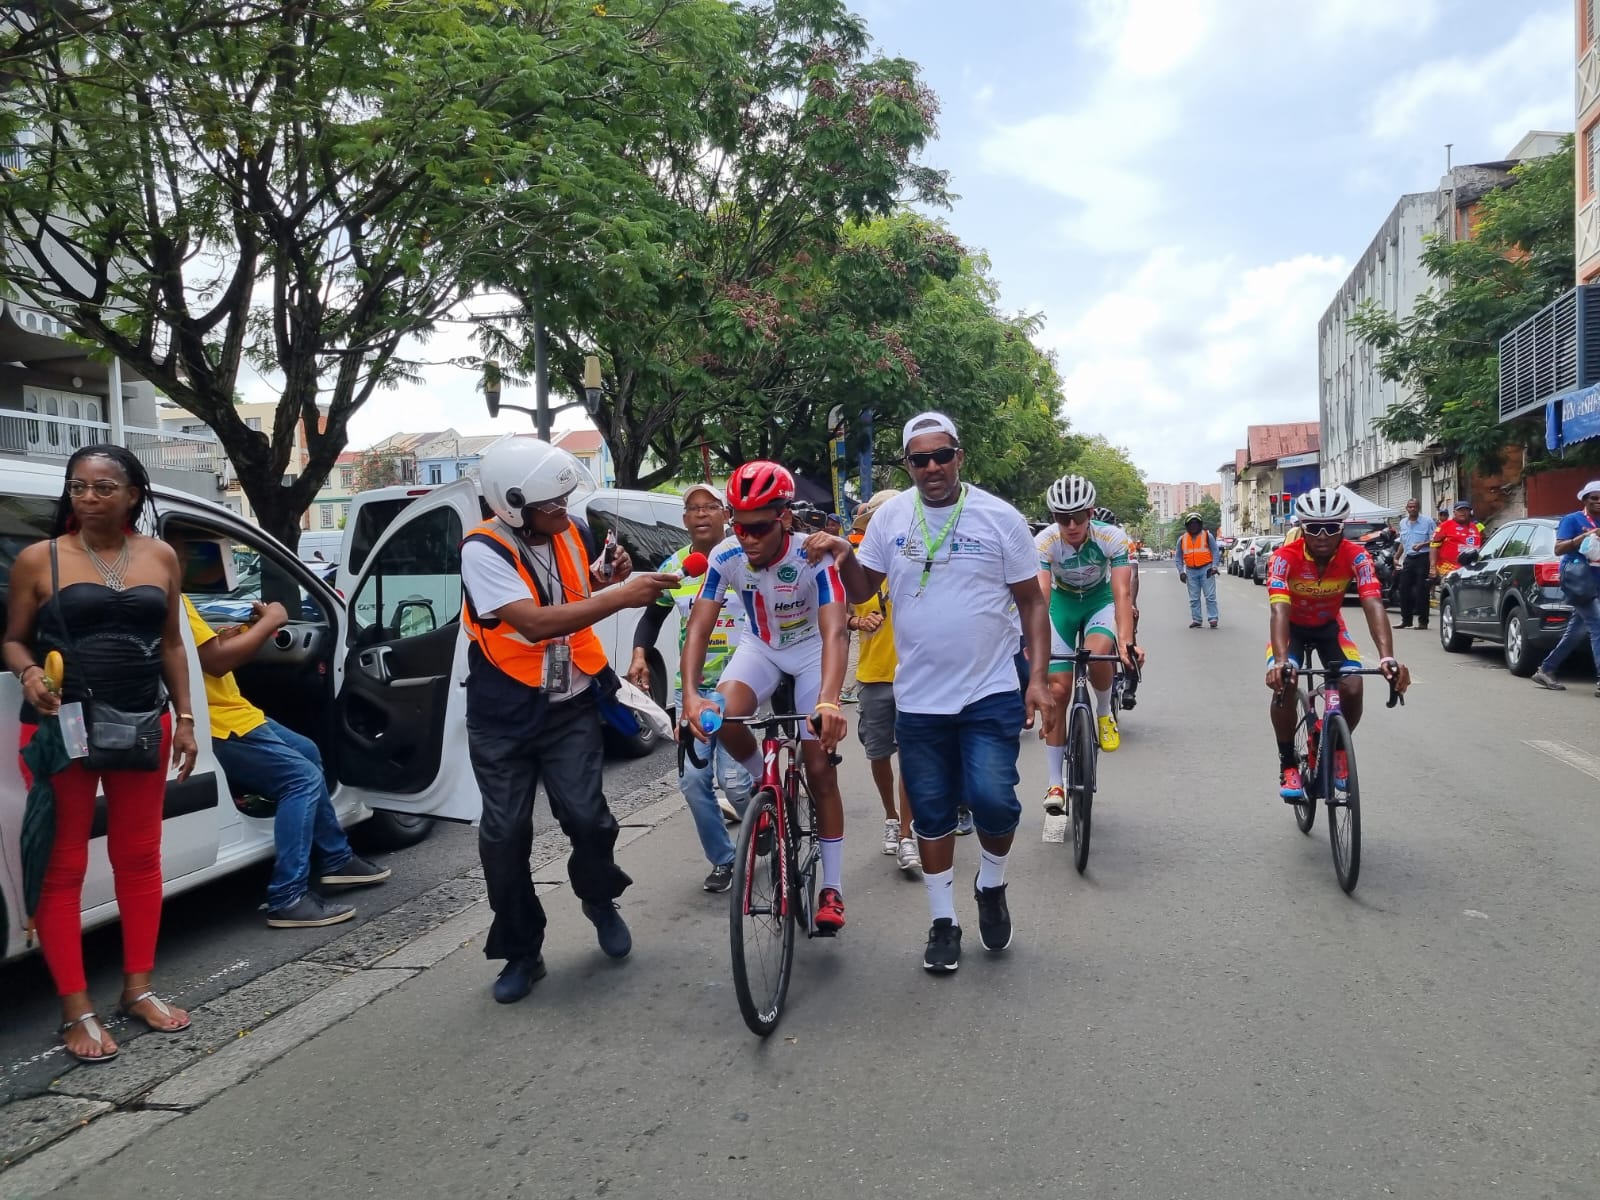     Edwin Nubul gagne la 2ème étape du Tour cycliste de Martinique à Fort-de-France

